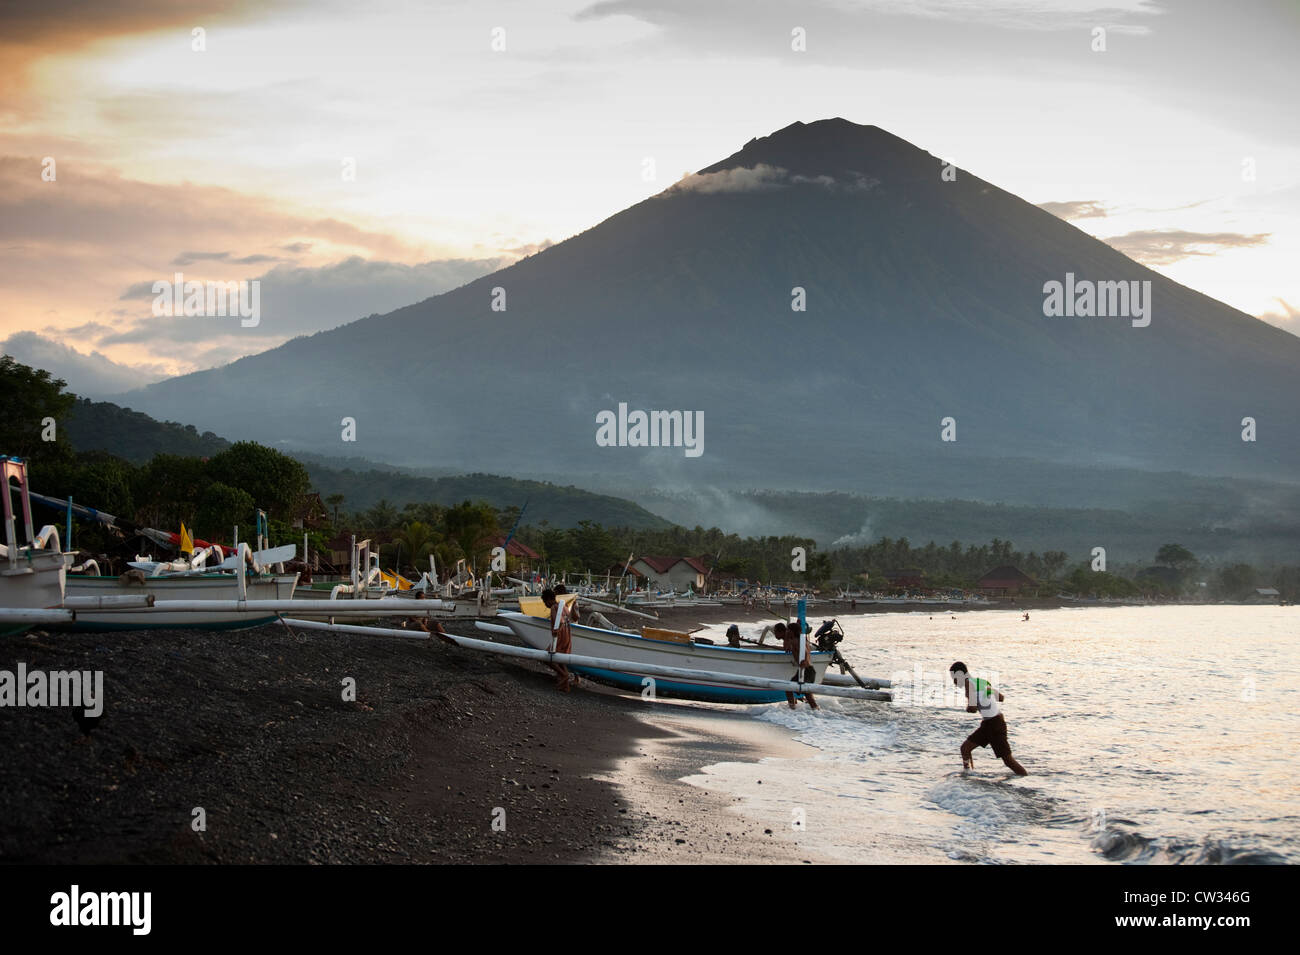 Der große Vulkan Gunung Agung gesehen während einer dramatischen Sonnenuntergang am Strand Jemeluk im Bereich Amed von Bali, Indonesien. Stockfoto